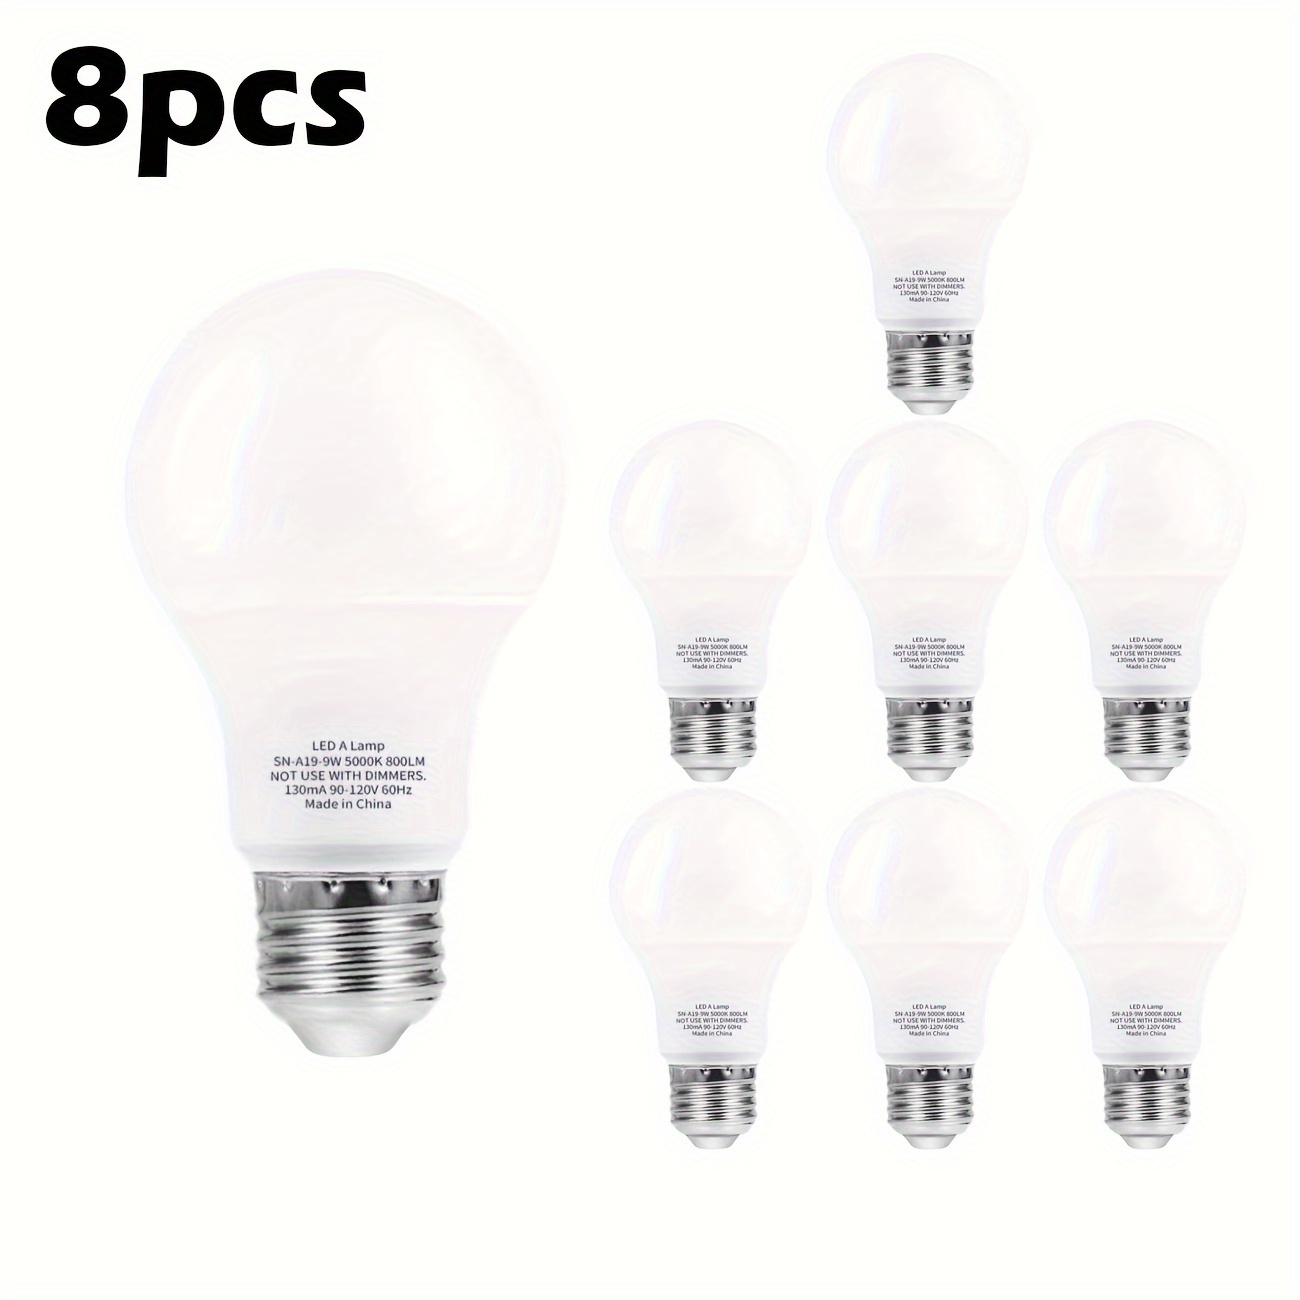  Energetic - Bombillas LED regulables A19, equivalente a 100 W,  blanco cálido, 3000 K, 13.5 W, 1600 lm, CRI80+, 15000 horas, paquete de 12  unidades, certificación UL : Herramientas y Mejoras del Hogar